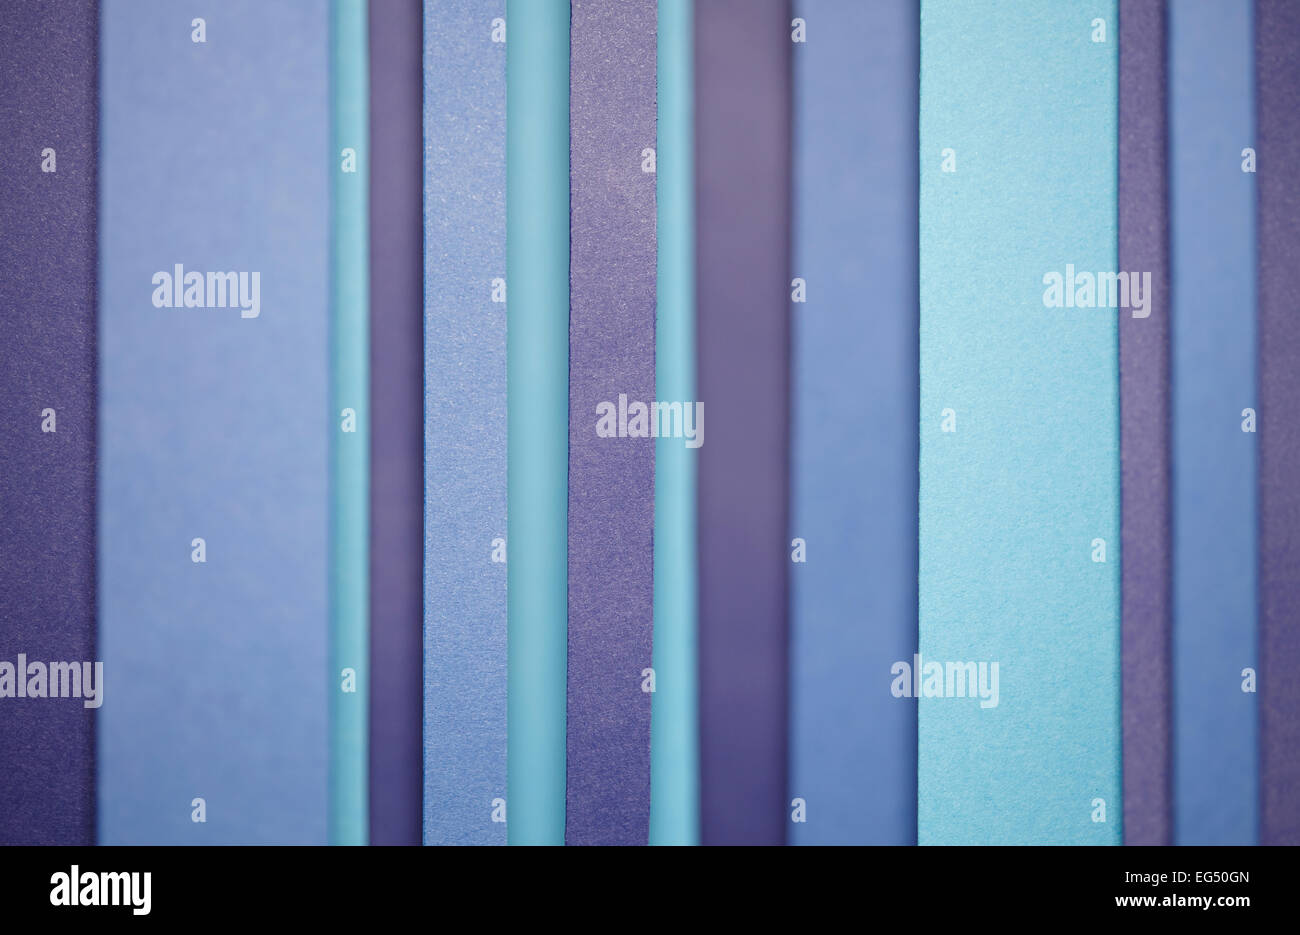 Bunter Hintergrund gemacht aus einem blauen Längsstreifen-Muster Stockfoto